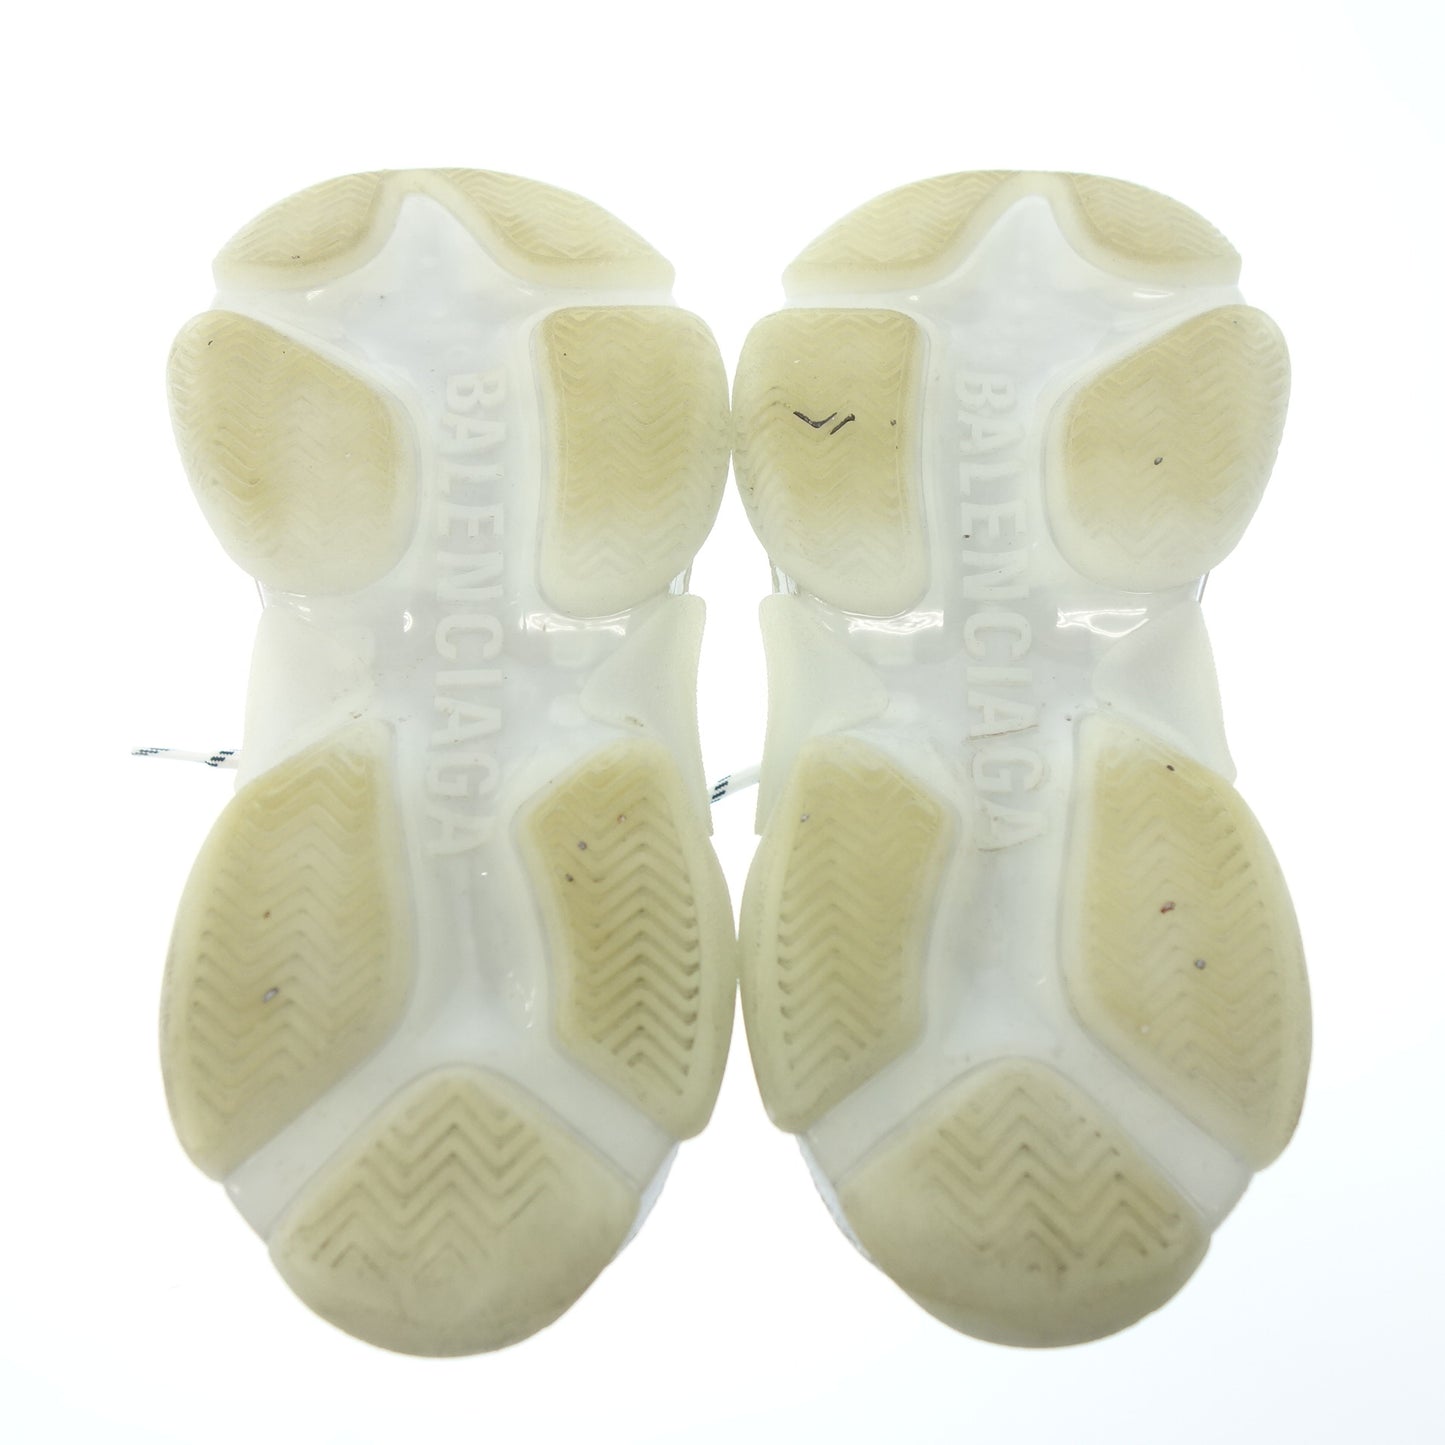 Good condition ◆ Balenciaga lace-up sneakers mesh triple S men's white size 24.5cm BALENCIAGA [AFC27] 